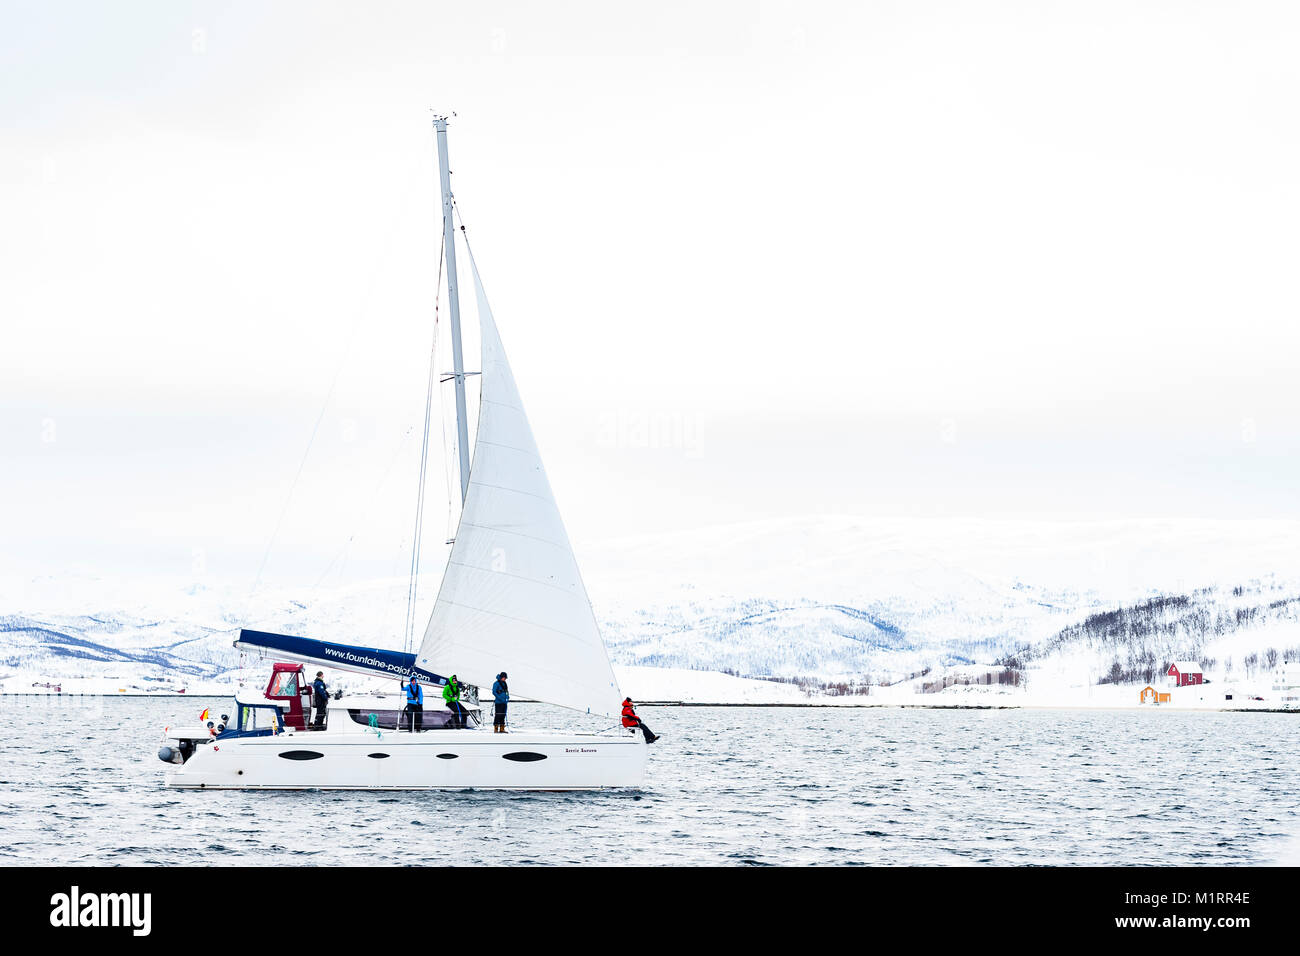 La Norvegia. Catamarano a vela in mare calmo con la costa norvegese dietro. Foto Stock